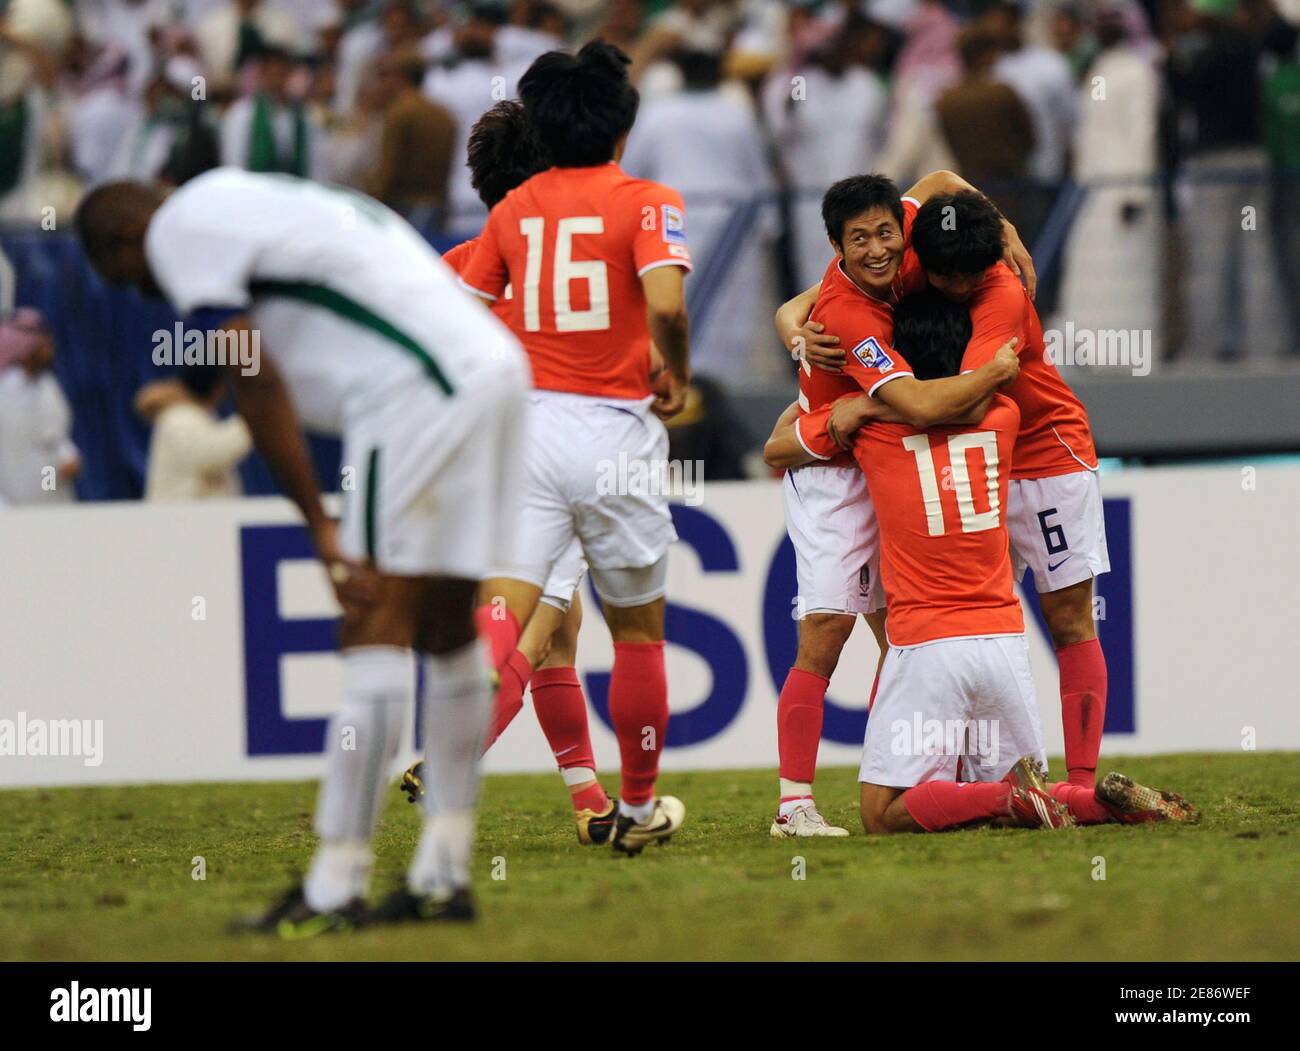 Südkoreanische Spieler reagieren nach einem Treffer gegen Saudi-Arabien während ihres WM-Qualifikationsspiels in Riad am 19. November 2008. REUTERS/Fahad Shadeed (SAUDI-ARABIEN) Stockfoto